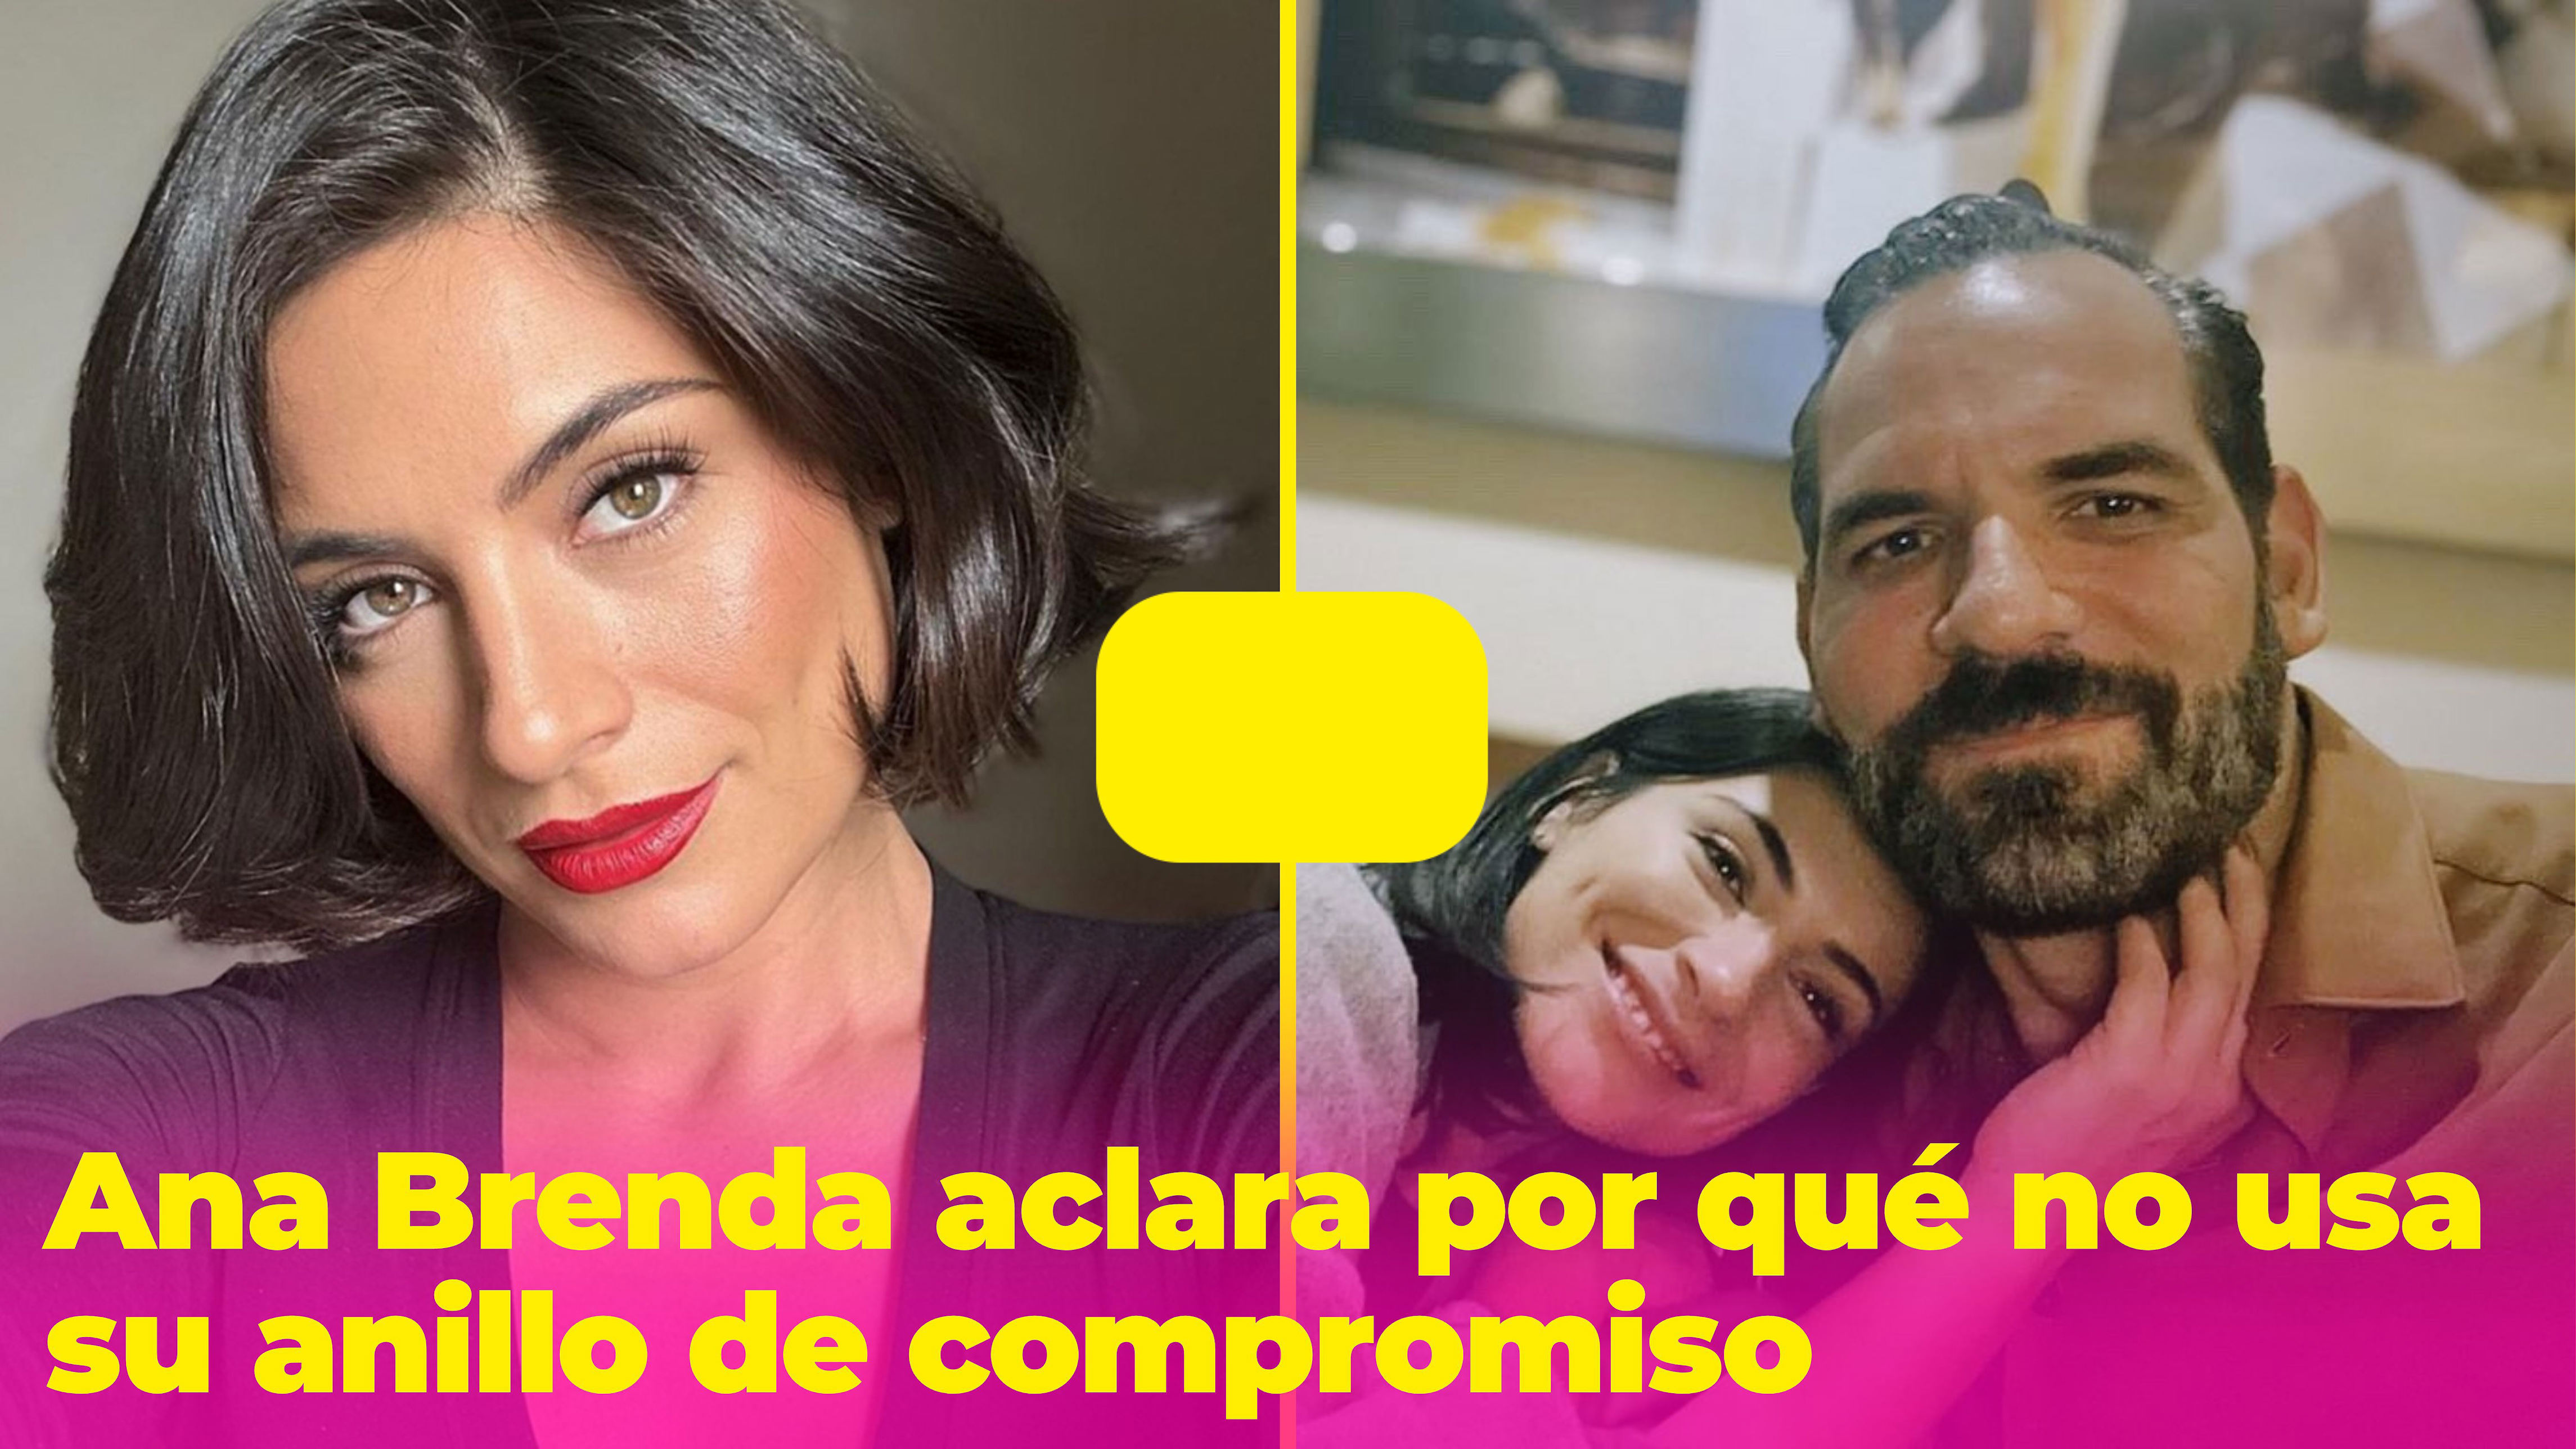 Ana Brenda Se Retira Los Implantes Y Publica Fotos Revela El Fuerte